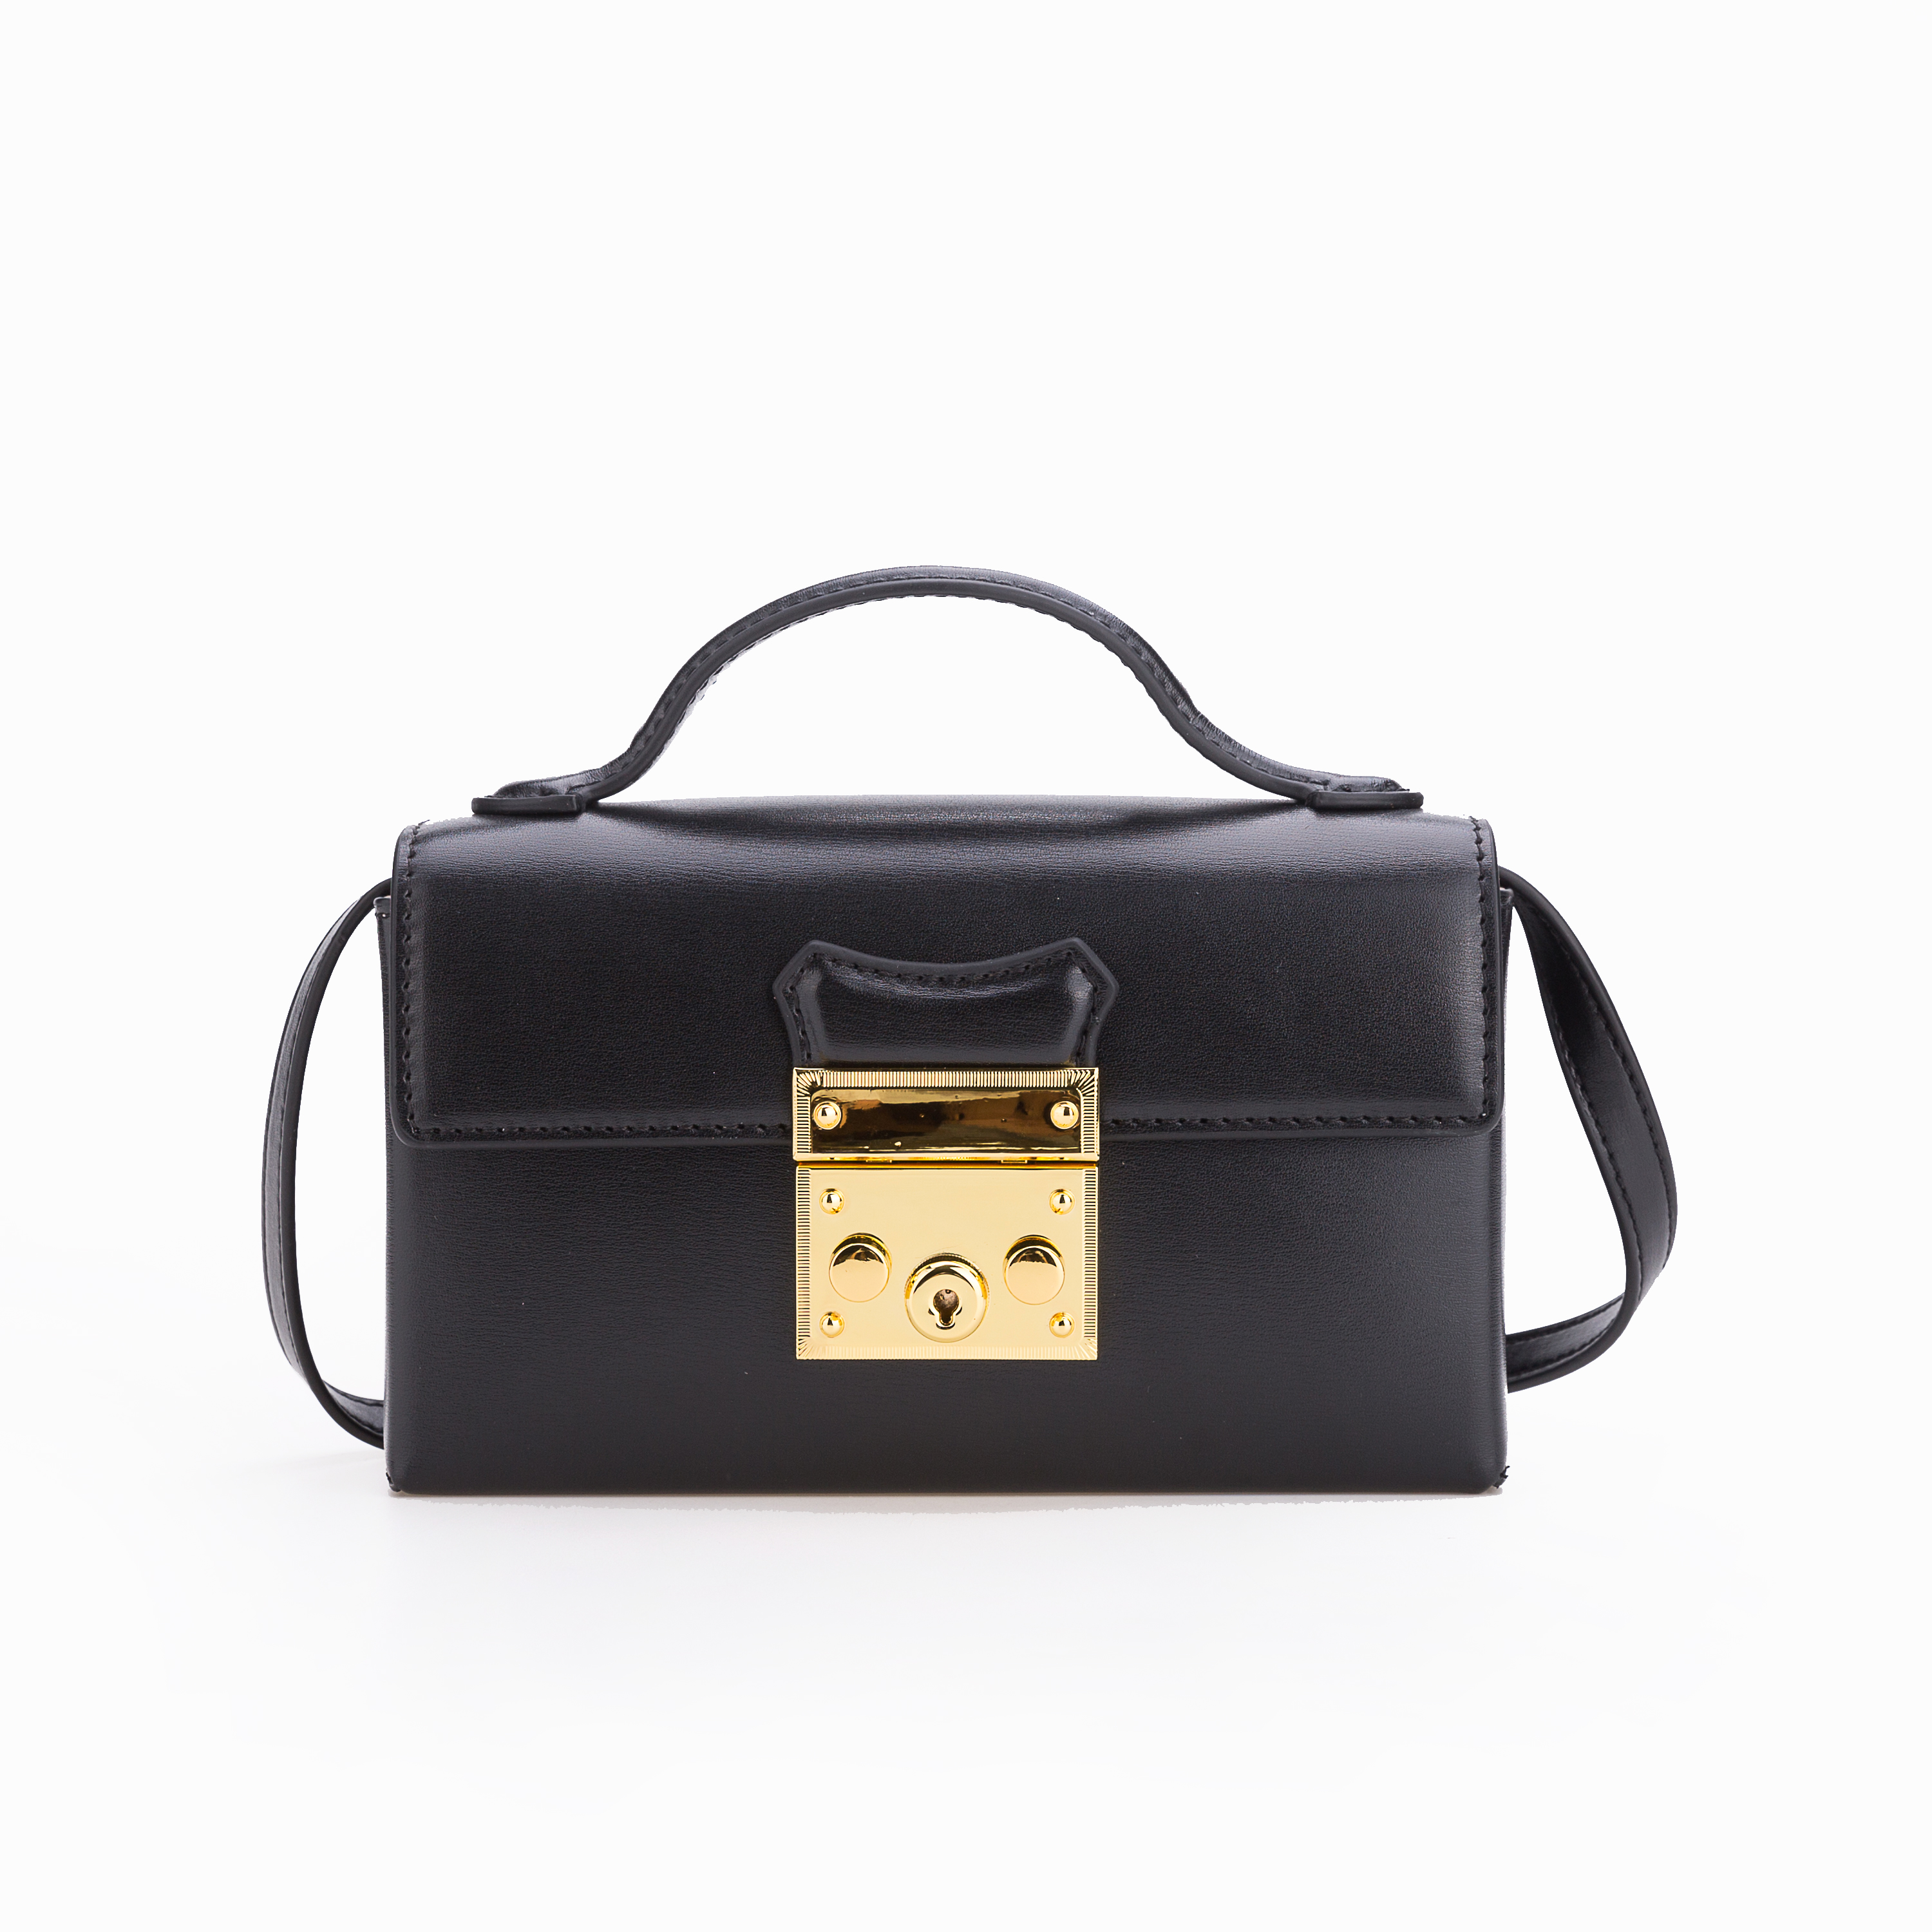 New Arrvial Bag Fashion Elegant Ladies Box Handbags